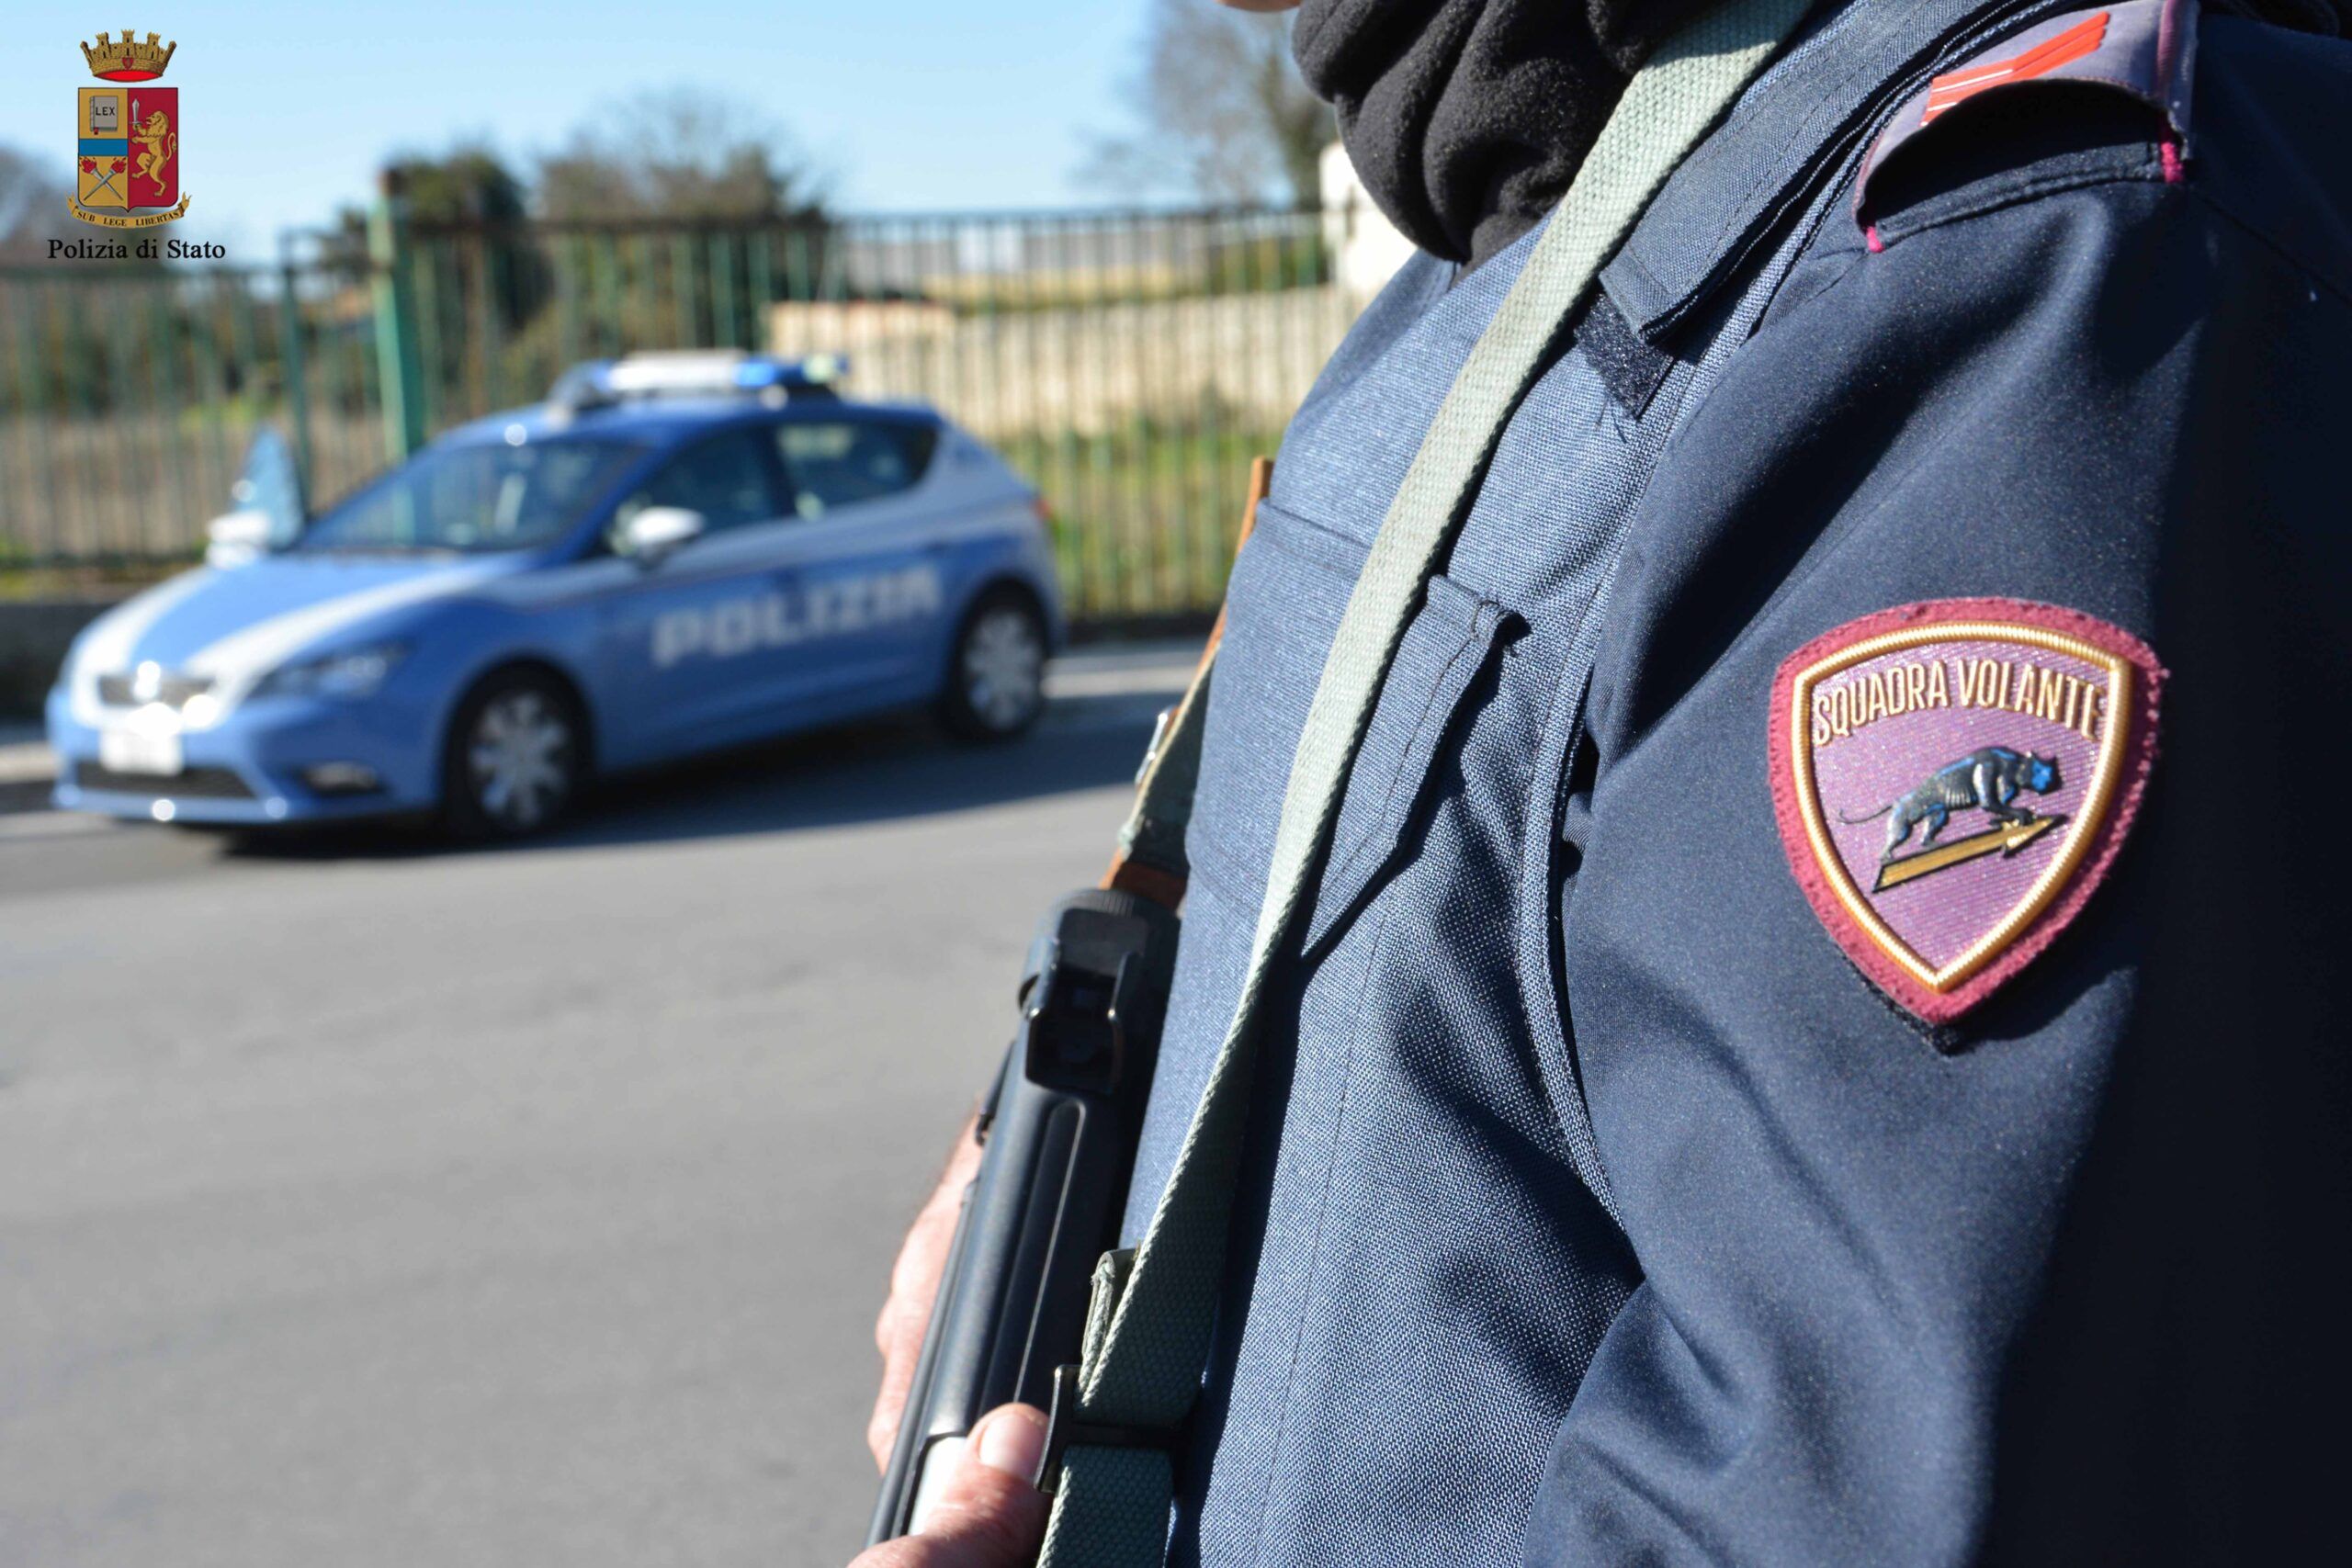 Polizia intervenuta per arrestare l'uomo che ha commesso le due rapine ieri a roma